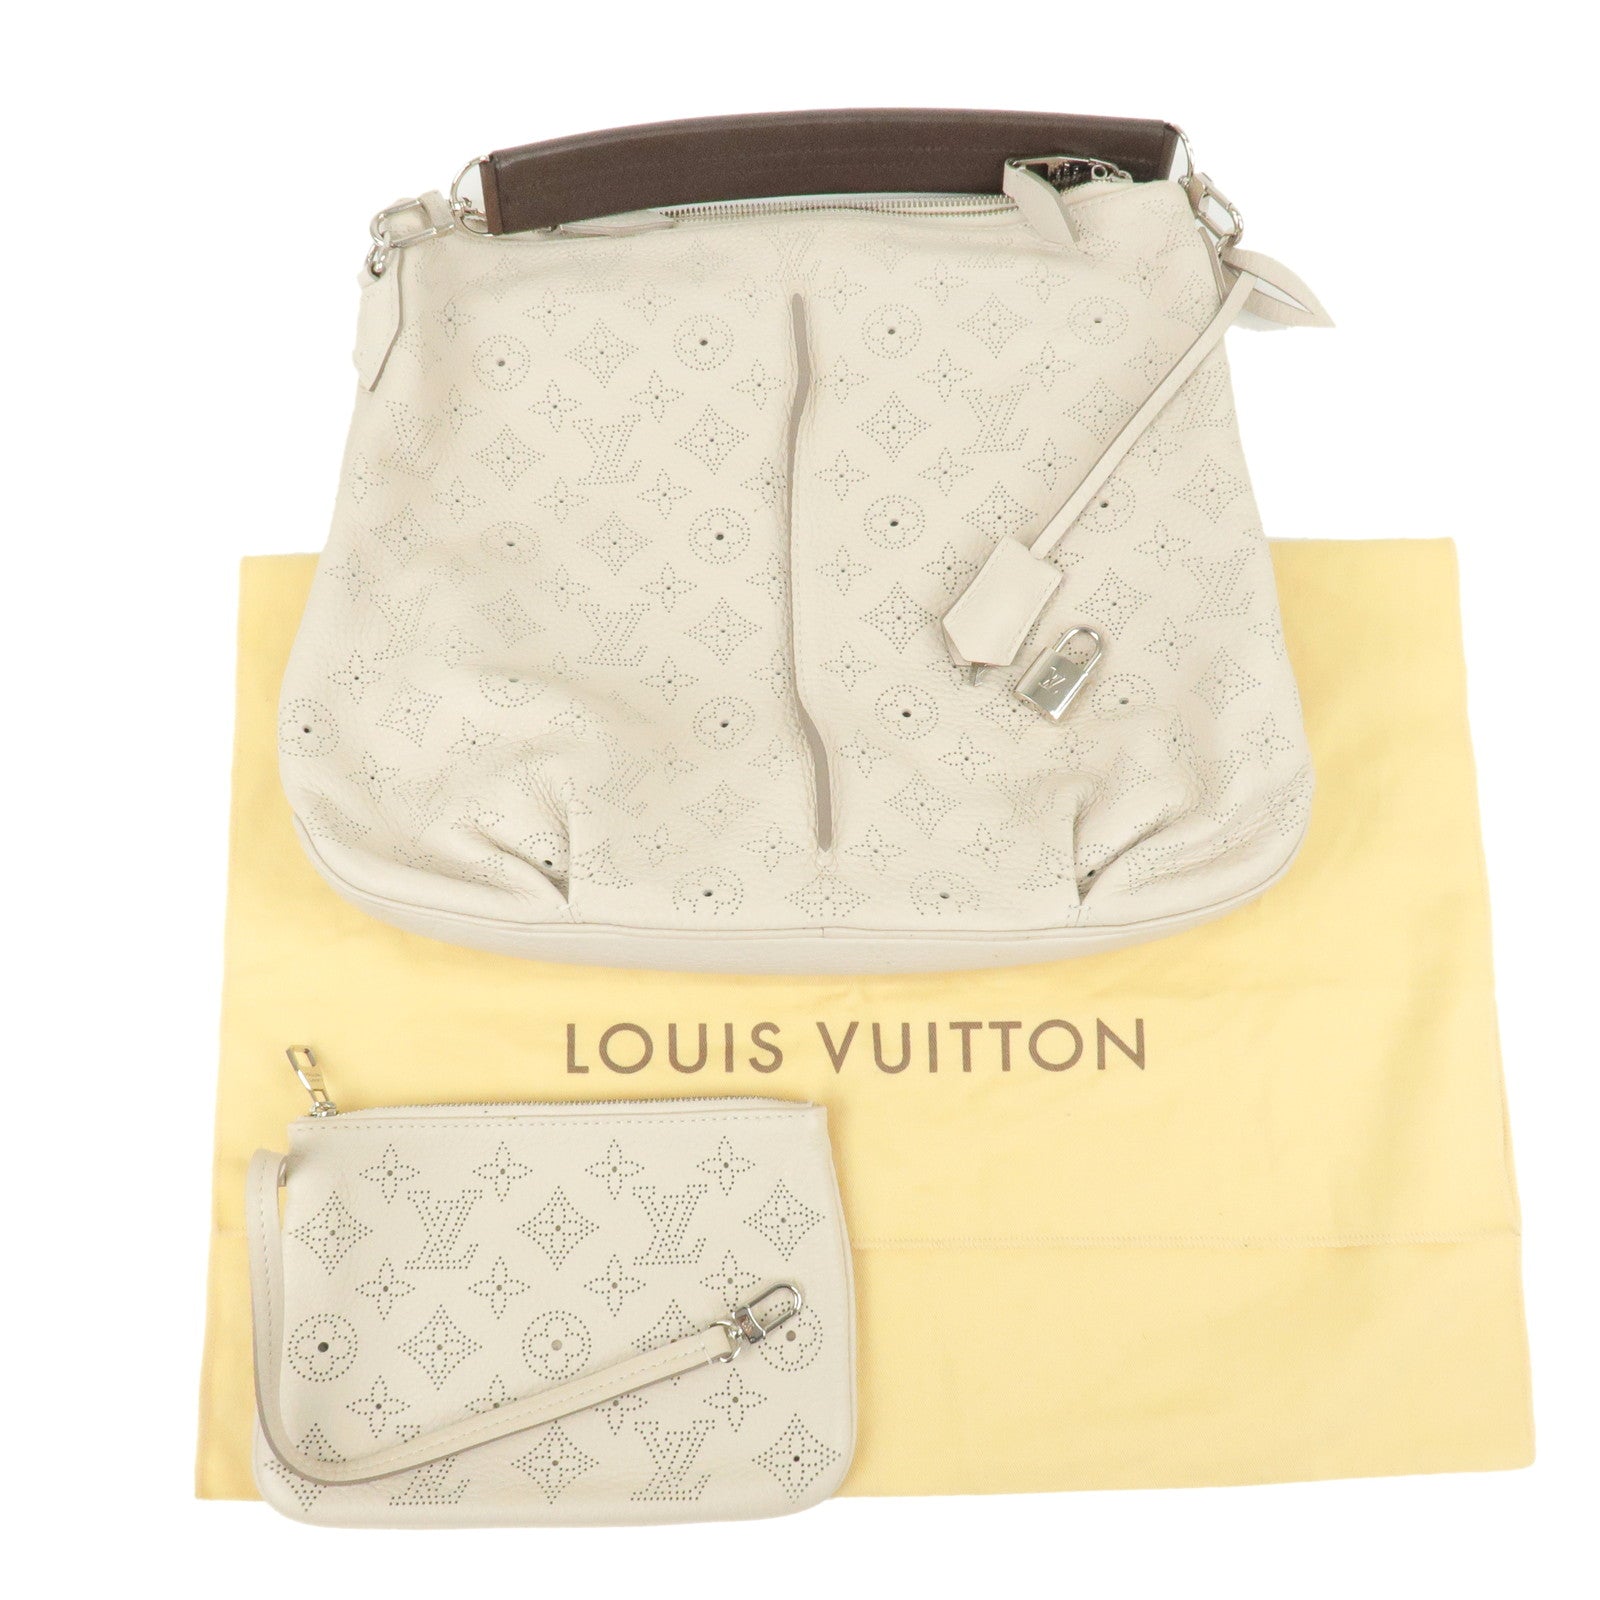 Voir tous les sacs Louis Vuitton Bisten 70